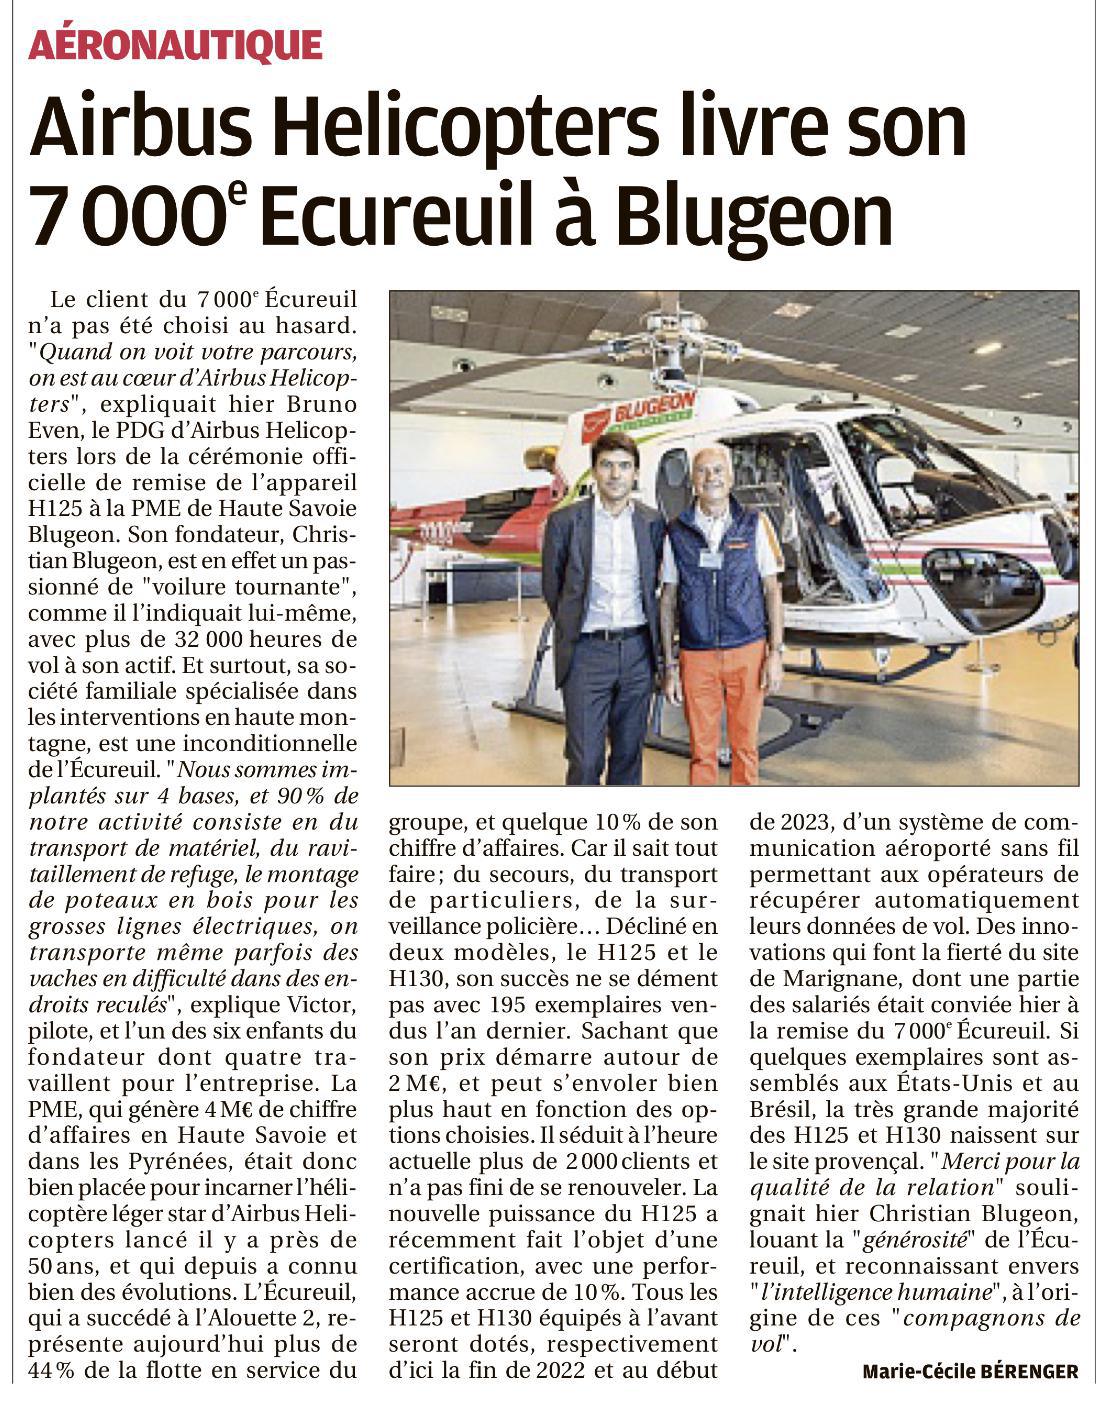 Livraison du 7 000e Ecureuil à Blugeon !